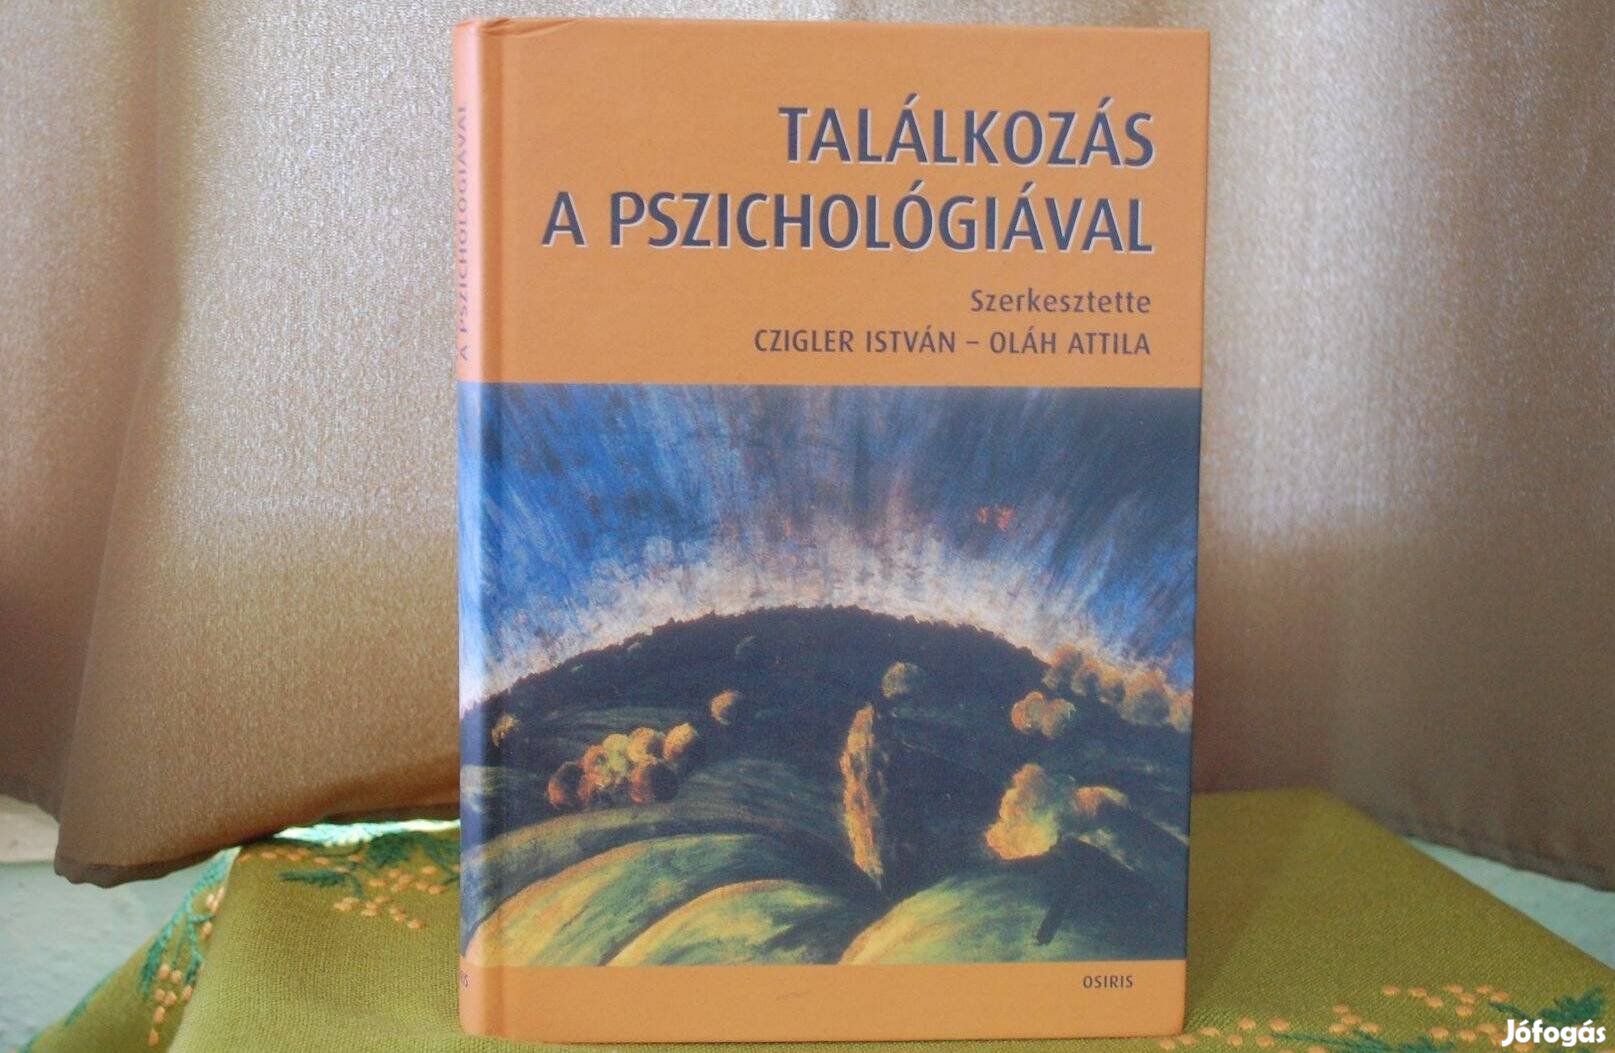 Czigler István - Oláh Attila Találkozás a Pszichológiával